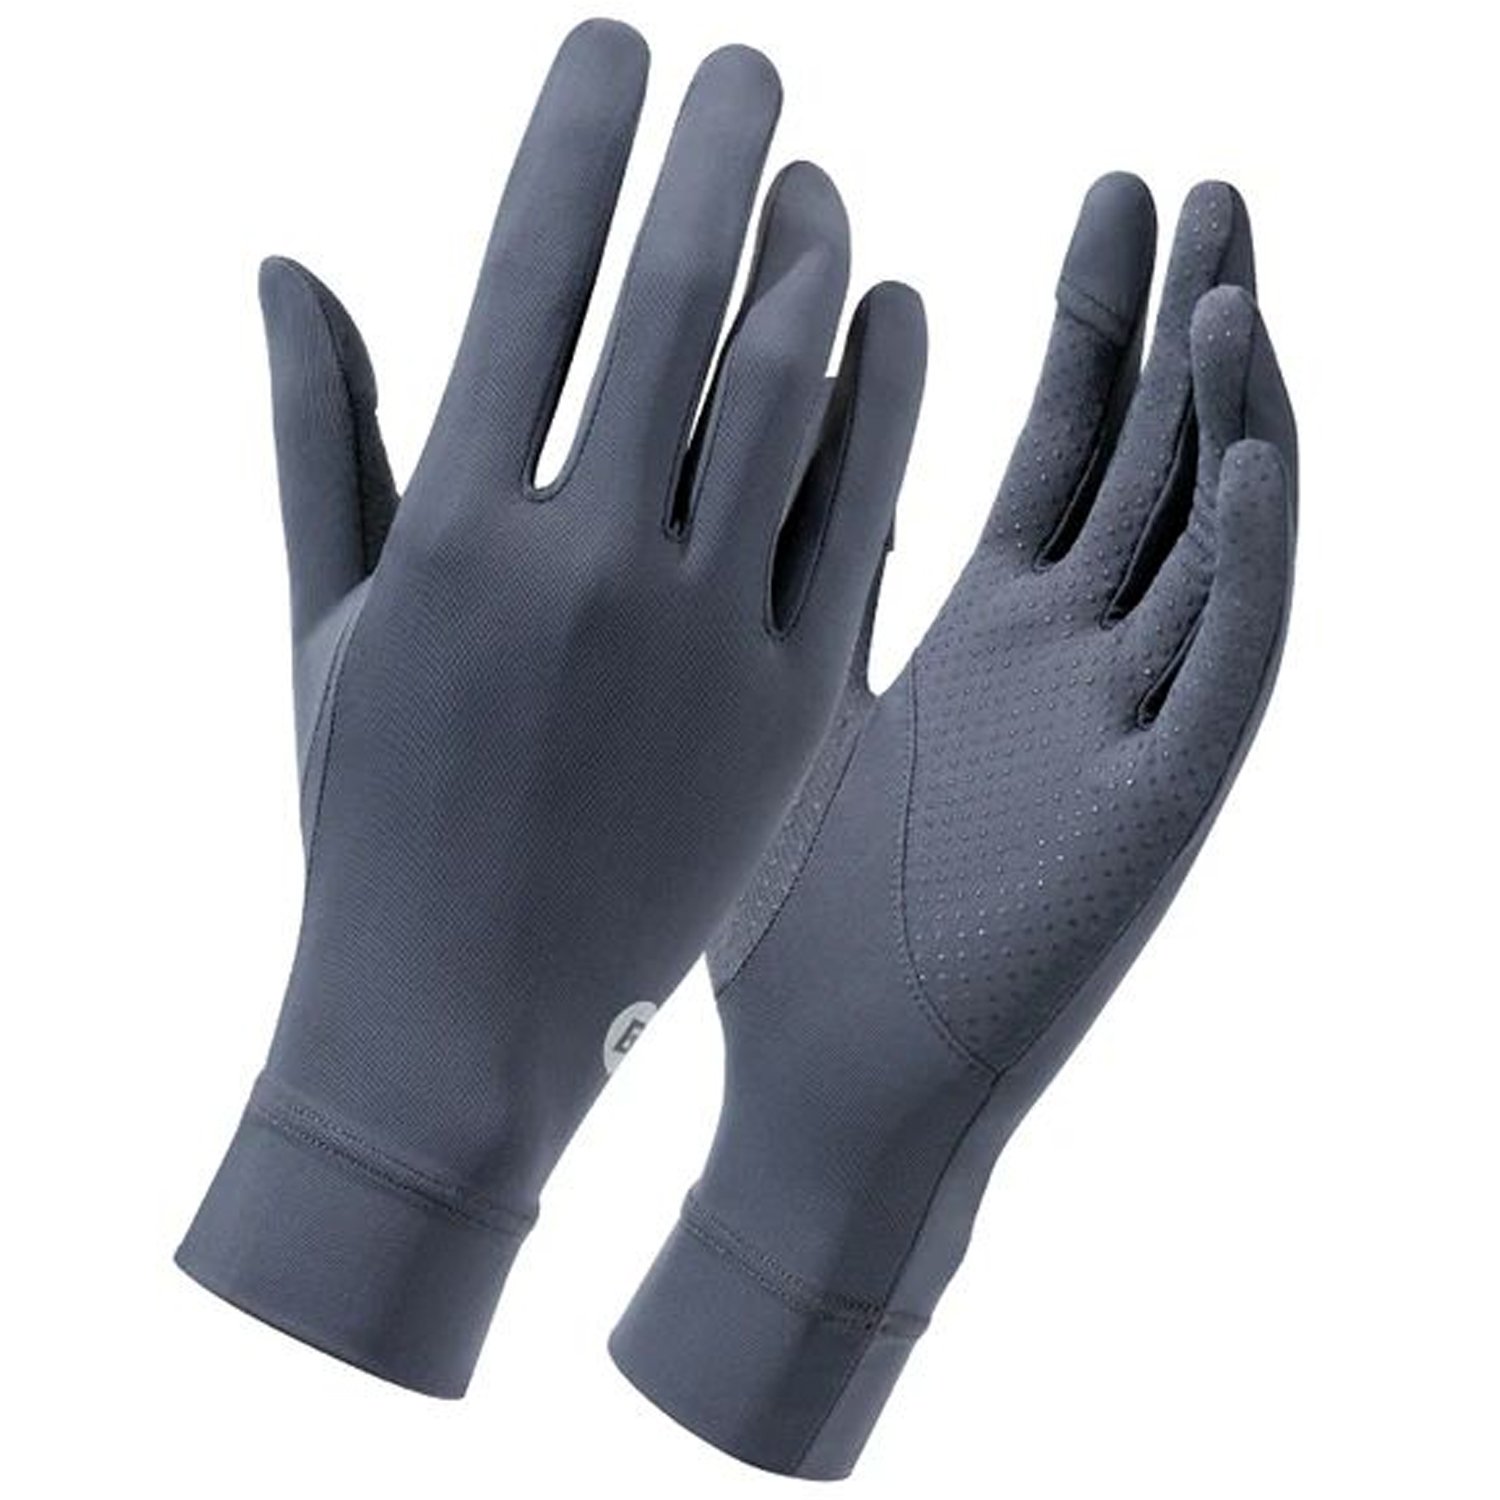 Велоперчатки ROCKBROS, охлаждающий шелк, эластичные, серый, RB_16210003002 oxford велоперчатки oxford coolmax gloves ростовка s m